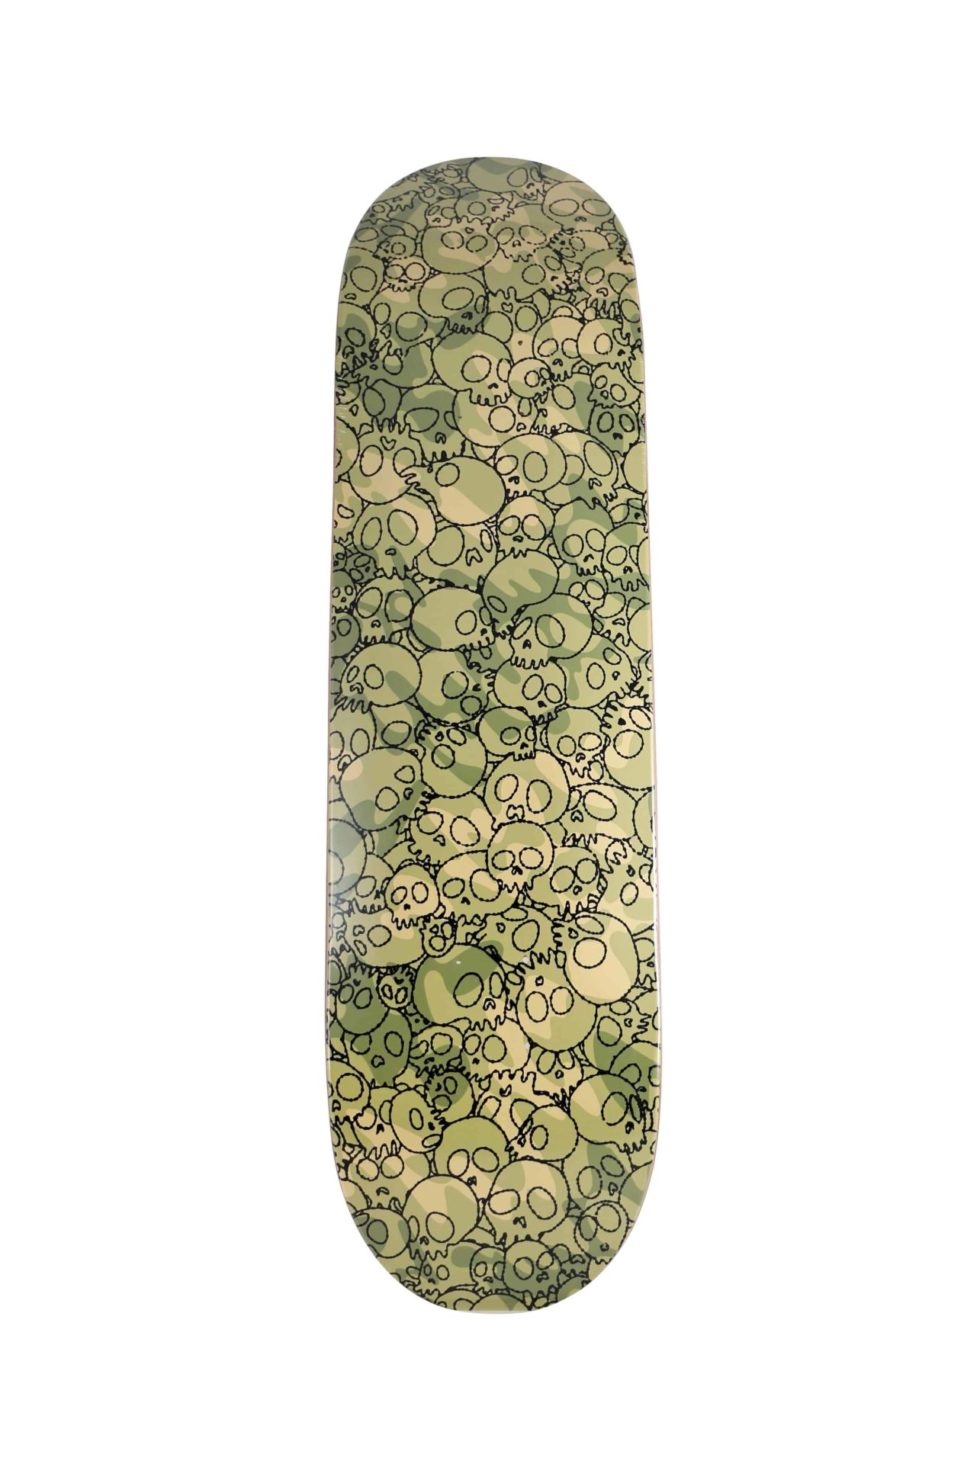 Lot #14493 – Takashi Murakami Skulls Green Camo Skateboard Skate Deck Skateboard Decks [tag]